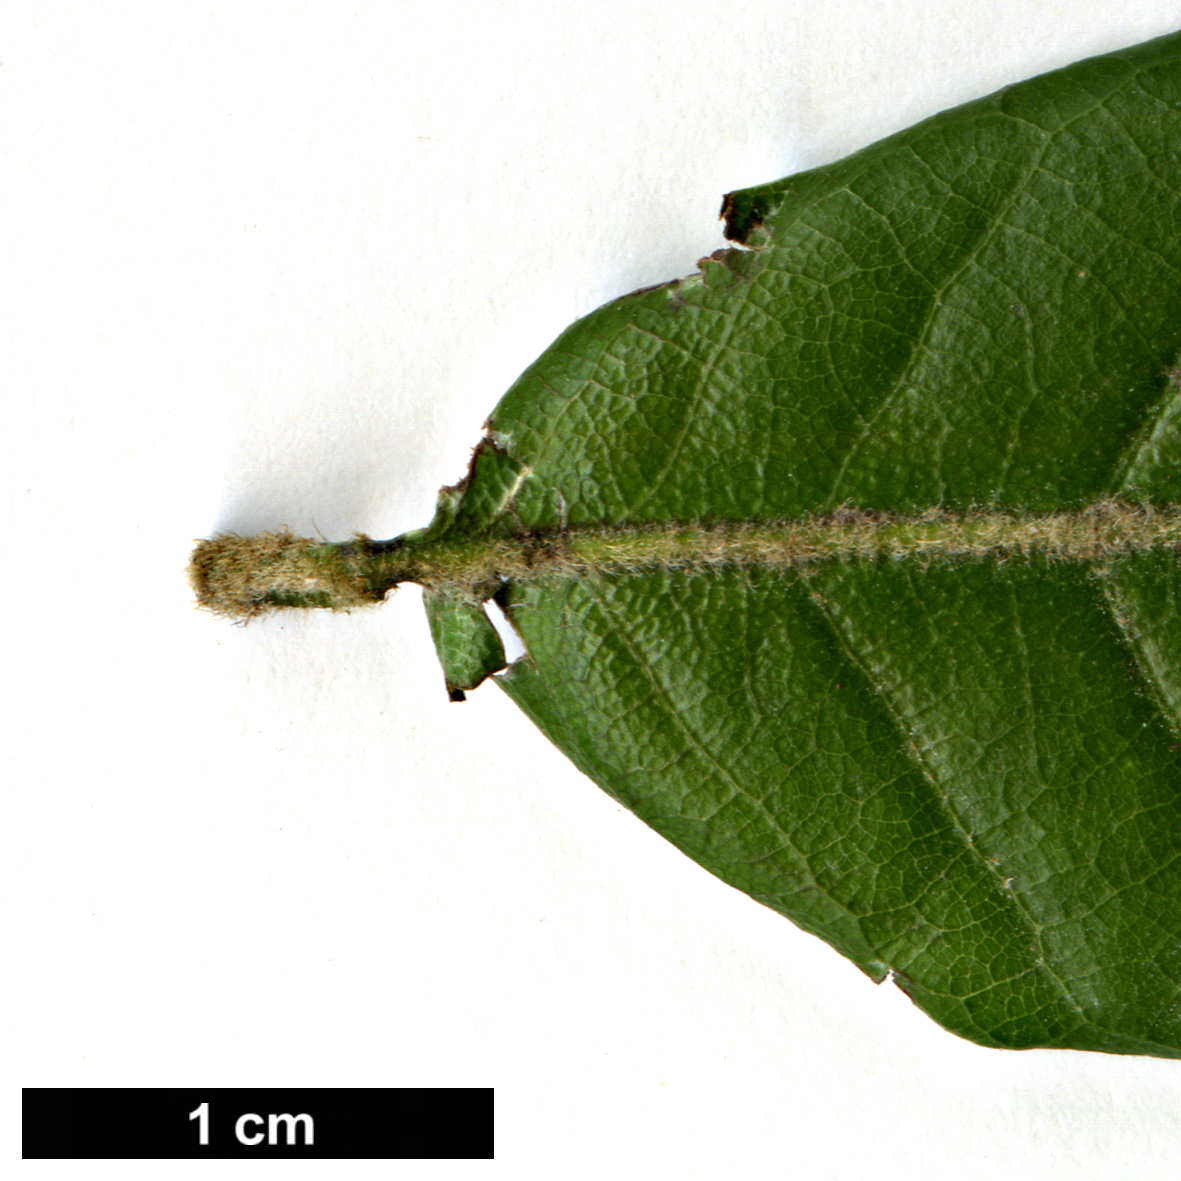 High resolution image: Family: Fagaceae - Genus: Quercus - Taxon: tungmaiensis